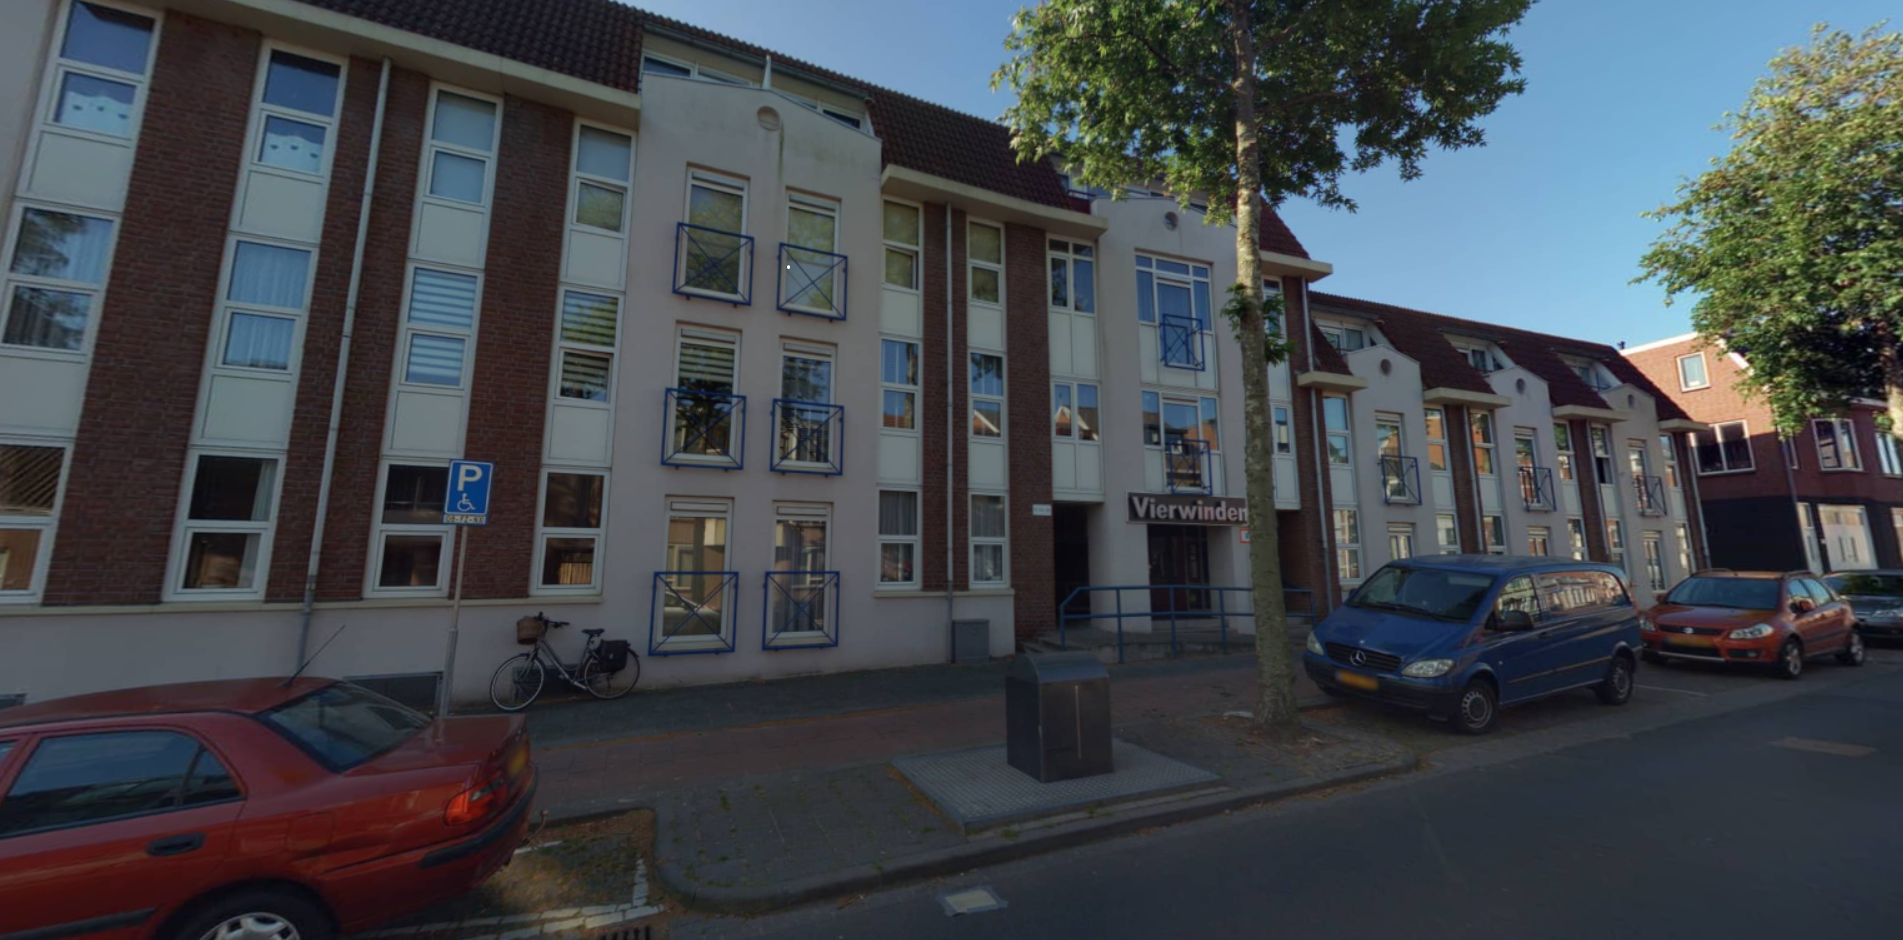 Van Dedemstraat 35, 4611 BD Bergen op Zoom, Nederland